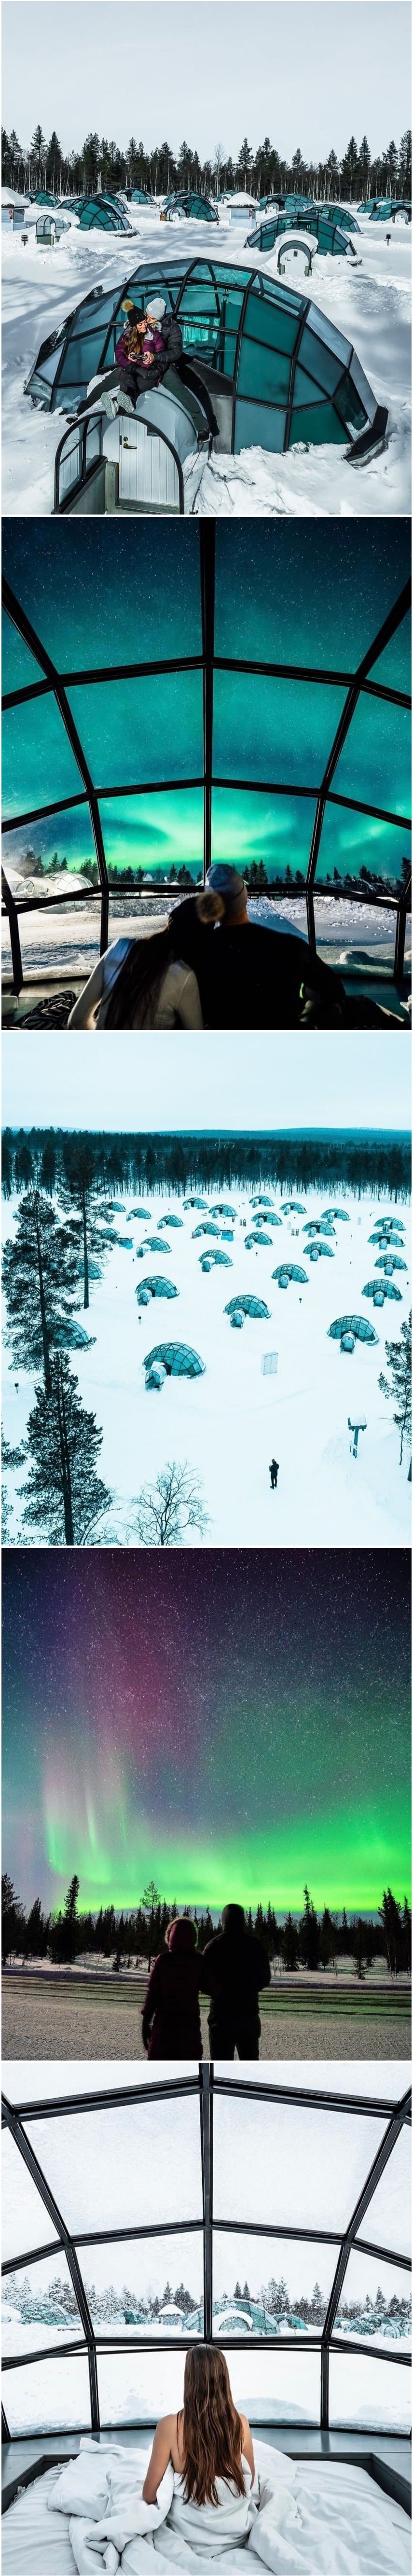 Finnish igloo.